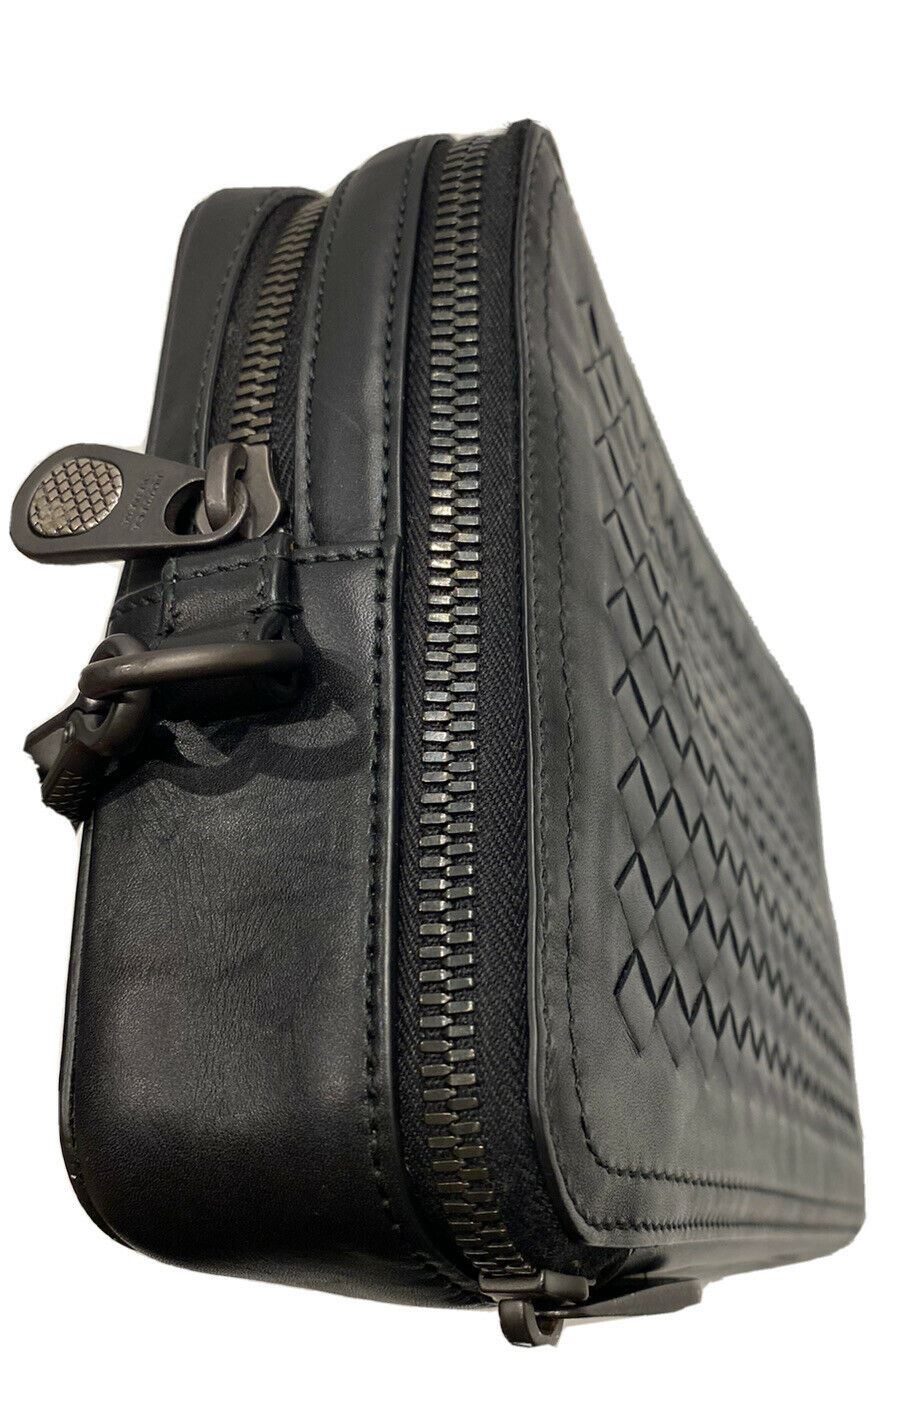 NWT $1550 Bottega Veneta Intrecciato Leather Zip-around Wristlet Black 551814